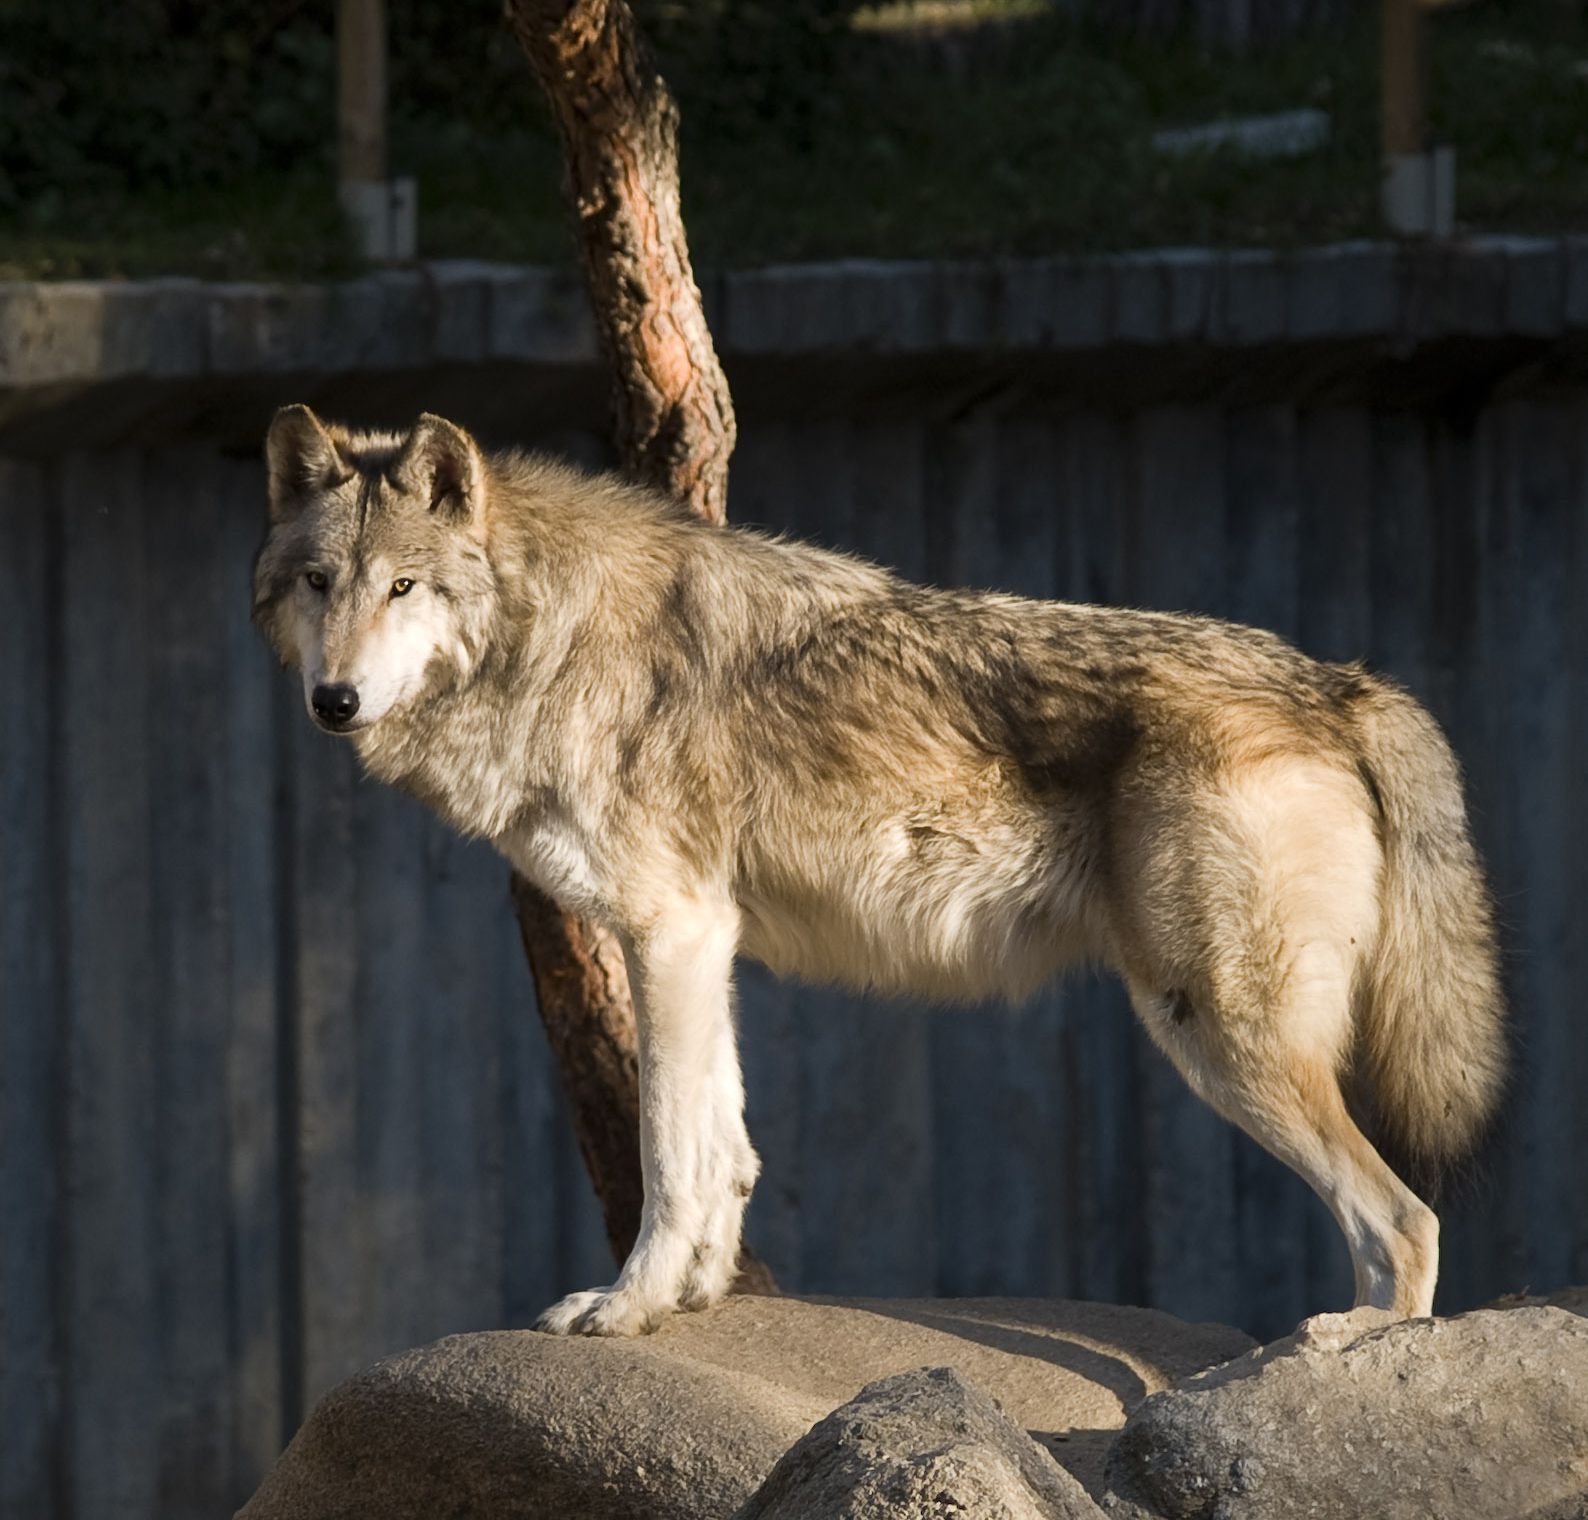 Individuo de lobo gris Mackenzie (Canis lupus occidentalis). Esta sería la especie de lobo que atacó a la mujer en Francia, este 23 de junio. Fotografía: Santiago Atienza.